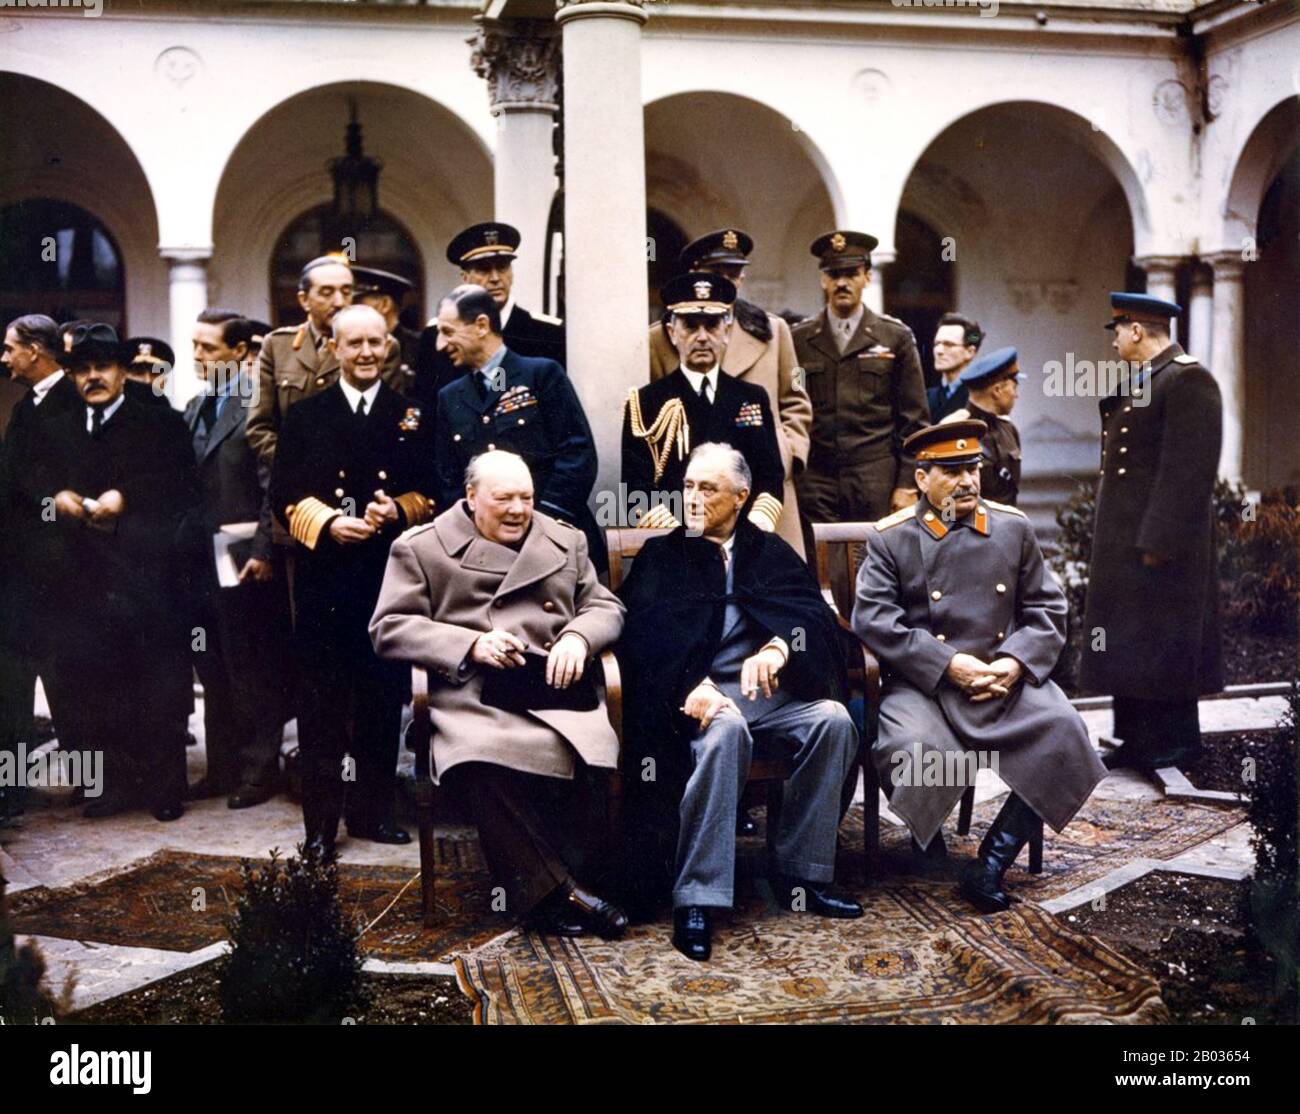 La Conferencia de Yalta, a veces llamada la Conferencia de Crimea y codenamada la Conferencia Argonauta, celebrada del 4 al 11 de febrero de 1945, fue la reunión de Jefes de Gobierno de los Estados Unidos, el Reino Unido y la Unión Soviética, representada por el Presidente Franklin D. Roosevelt, El primer Ministro Winston Churchill y el primer Ministro Joseph Stalin, respectivamente, con el fin de discutir la reorganización de Europa de la posguerra. La conferencia se celebró en el Palacio Livadia, cerca de Yalta, en Crimea. La reunión tenía por objeto principalmente examinar el restablecimiento de las naciones de Europa desgarrada por la guerra. W Foto de stock